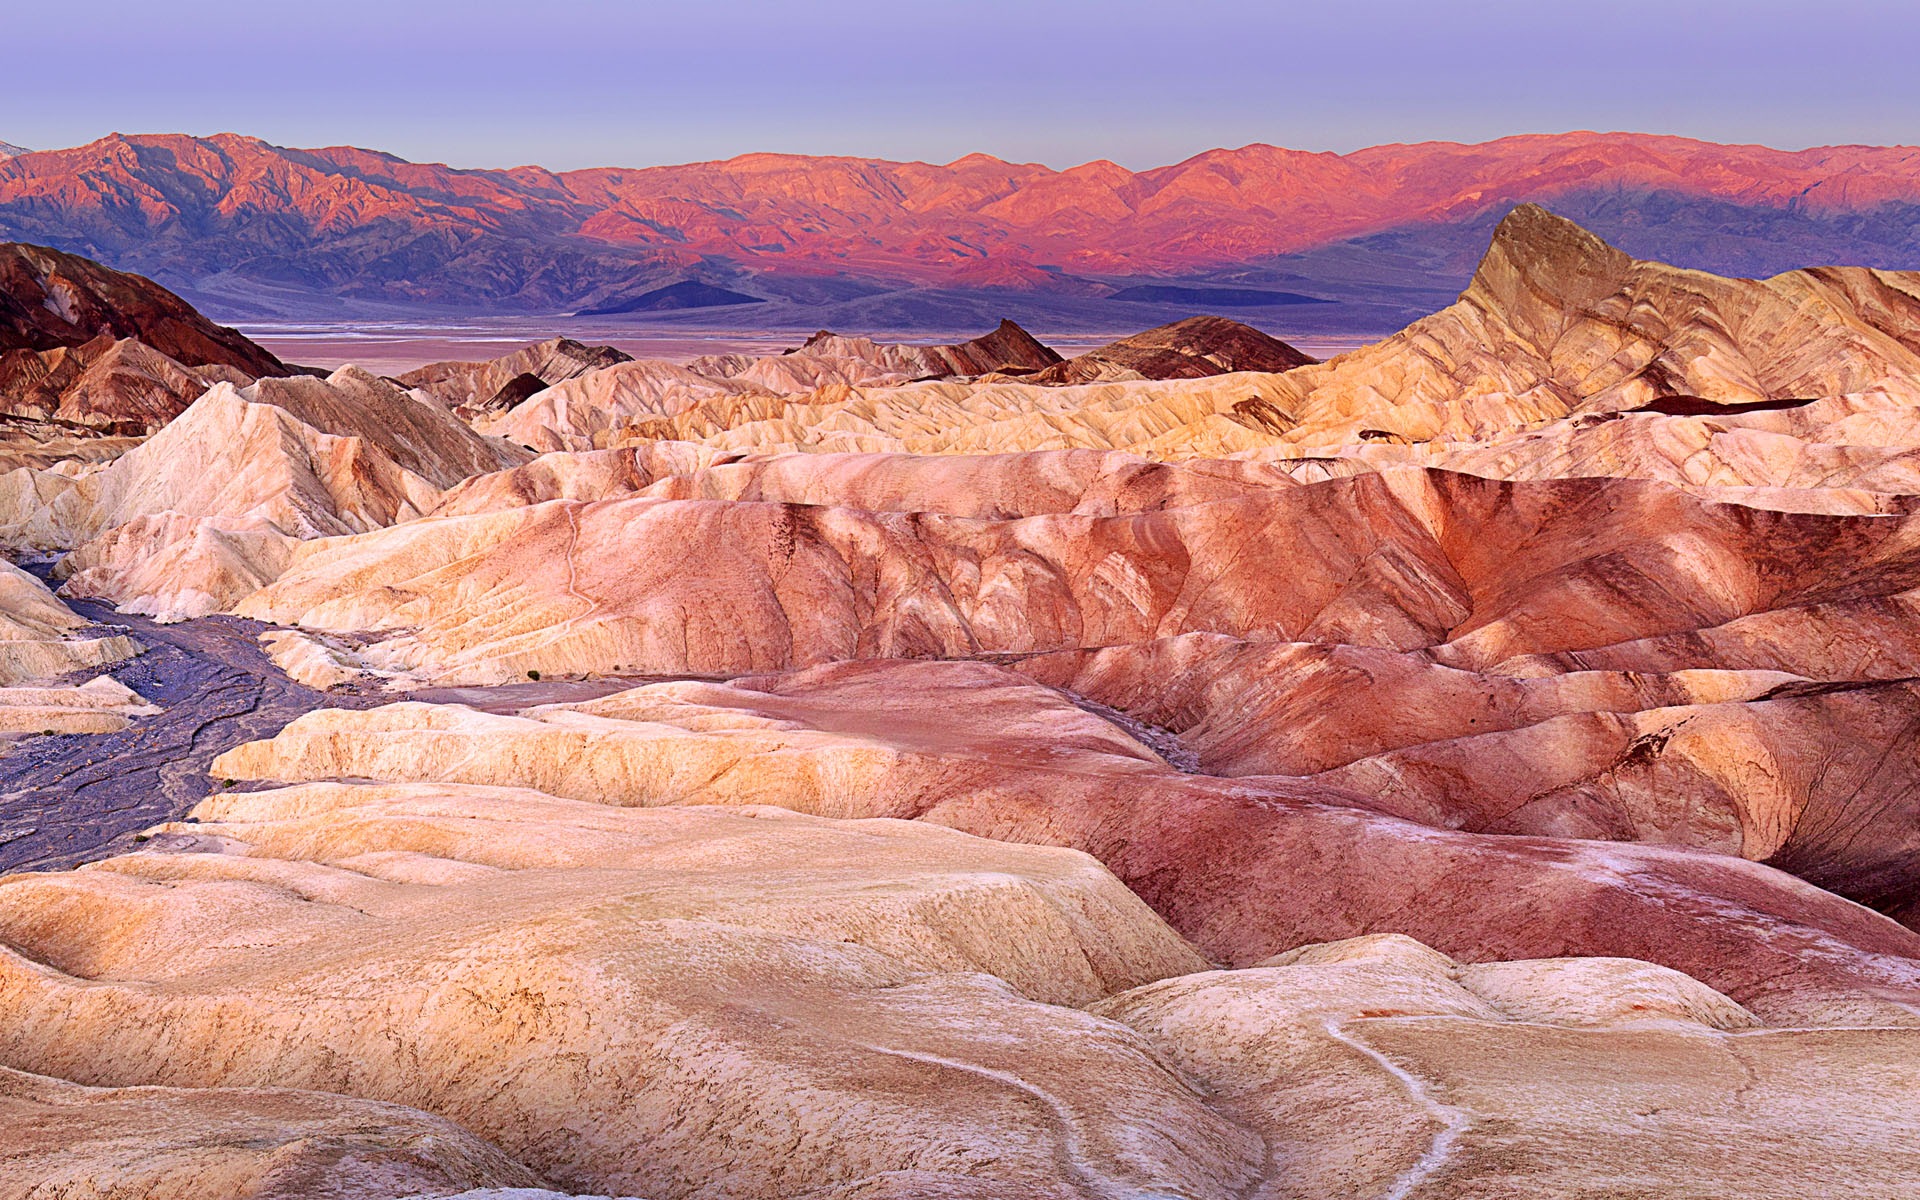 Les déserts chauds et arides, de Windows 8 fonds d'écran widescreen panoramique #10 - 1920x1200